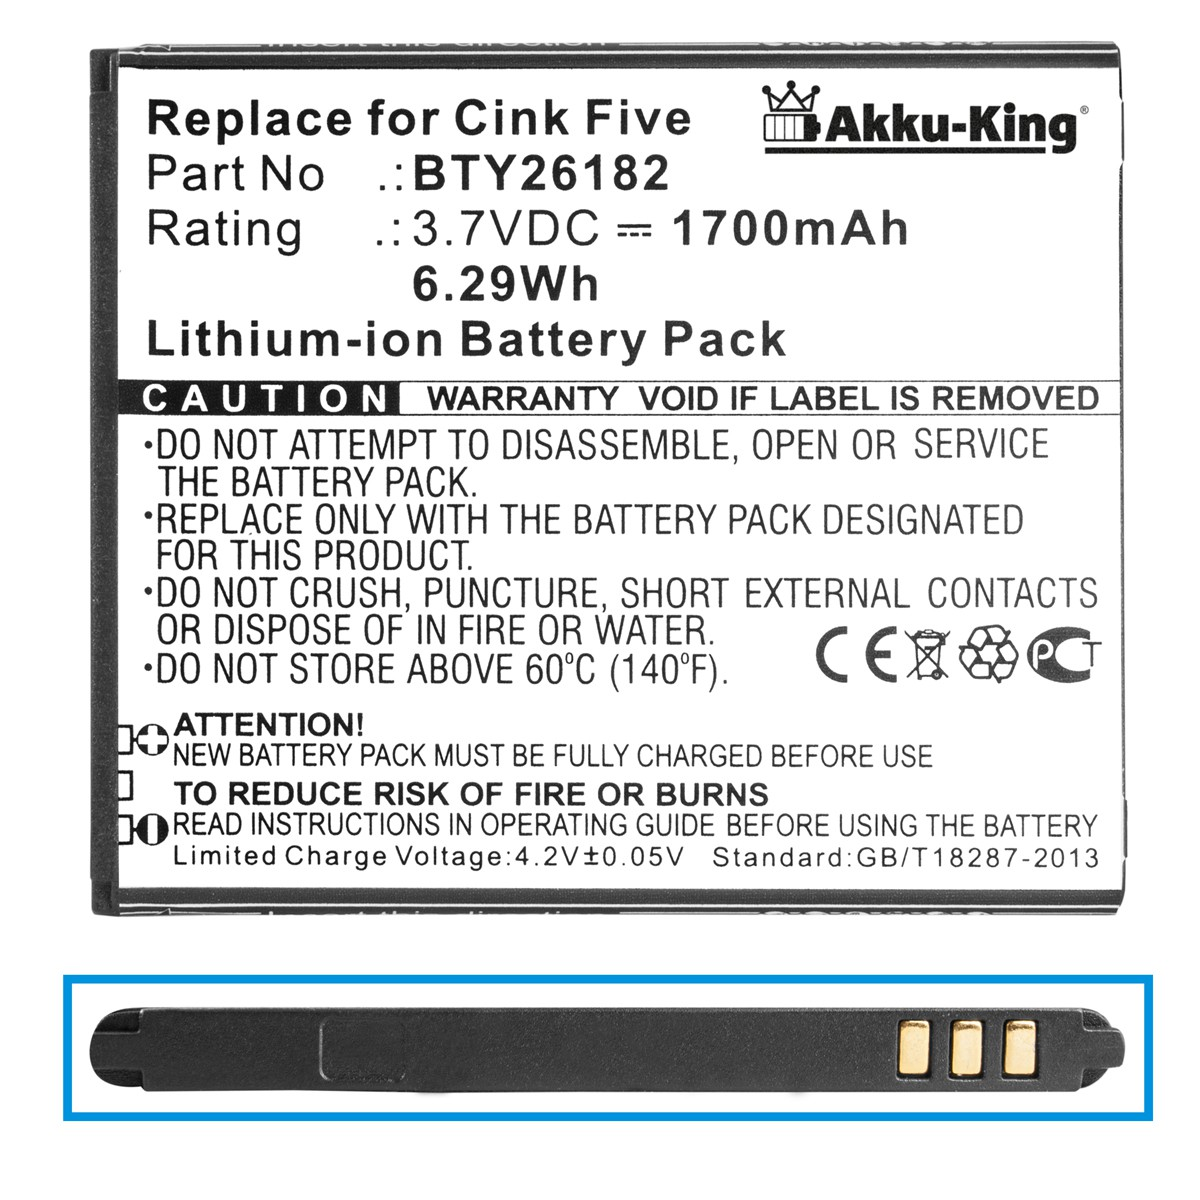 AKKU-KING Akku kompatibel mit 3.7 Volt, Li-Ion BTY26182 Handy-Akku, Wiko 1700mAh